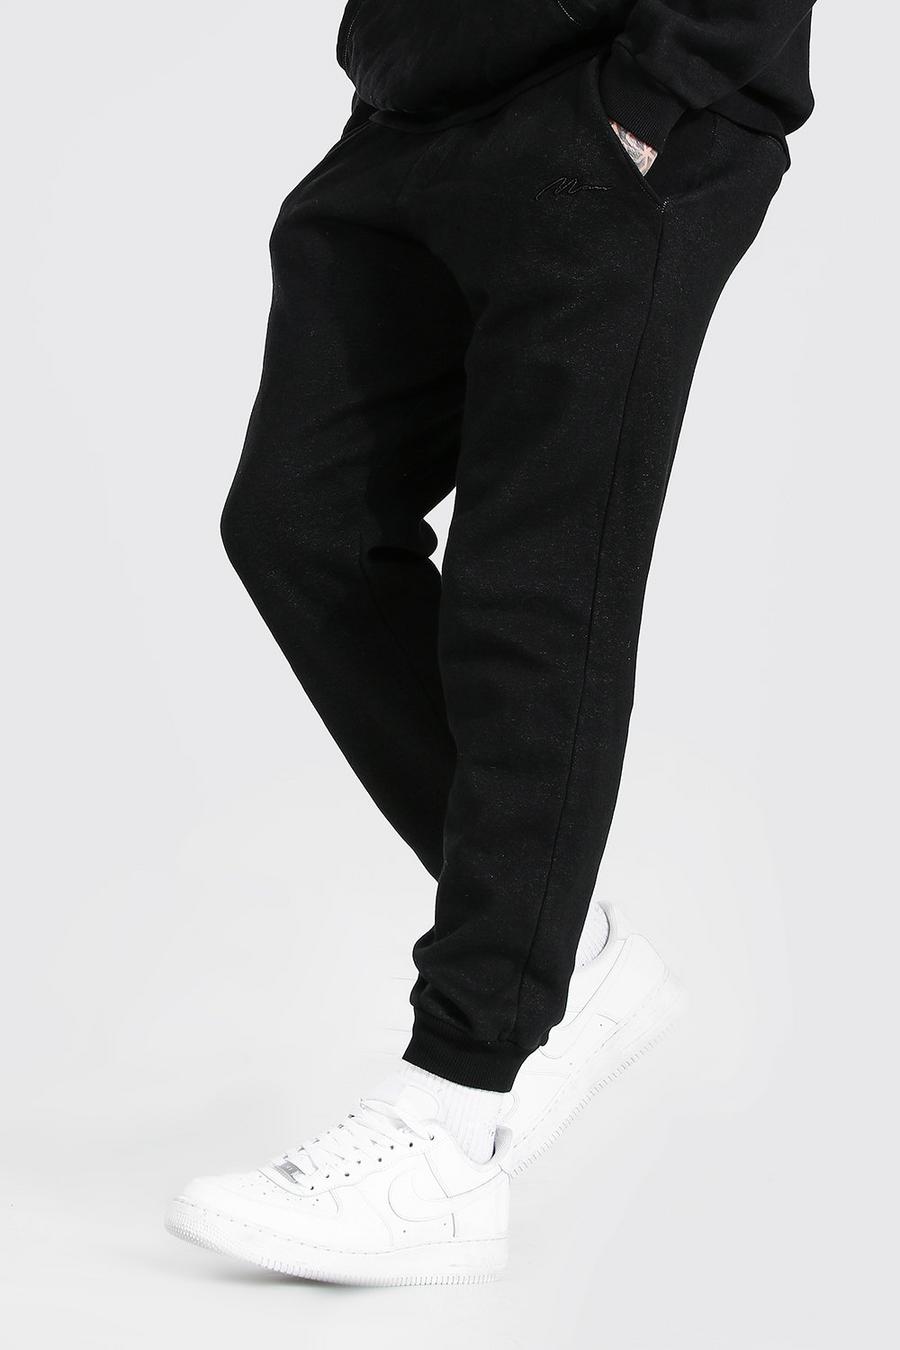 שחור דהוי מכנסי ריצה בגזרה רגילה בצביעה כפולה עם חתימת MAN image number 1